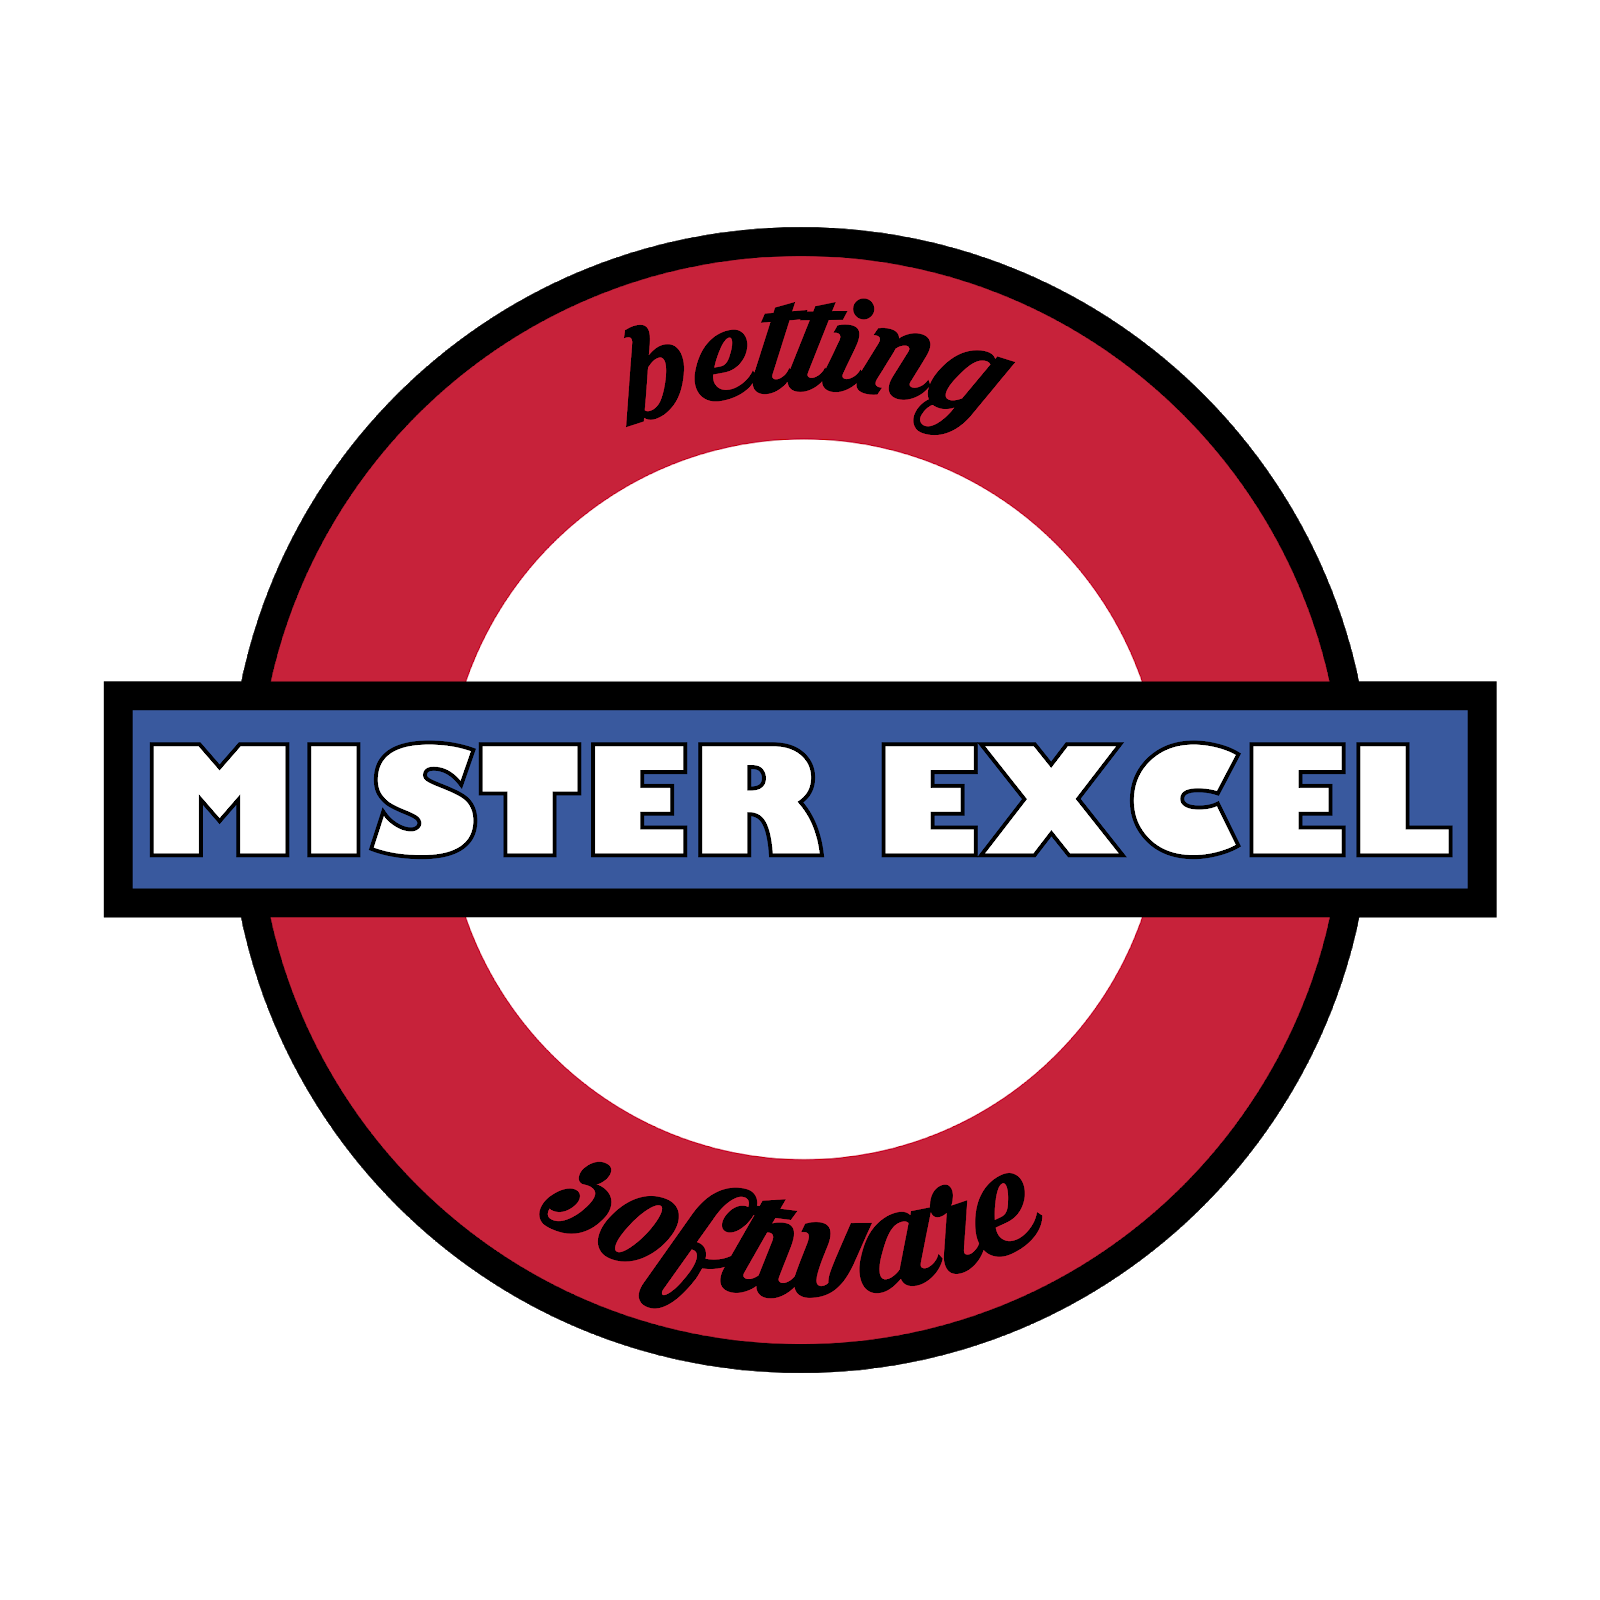 Mister Excel 